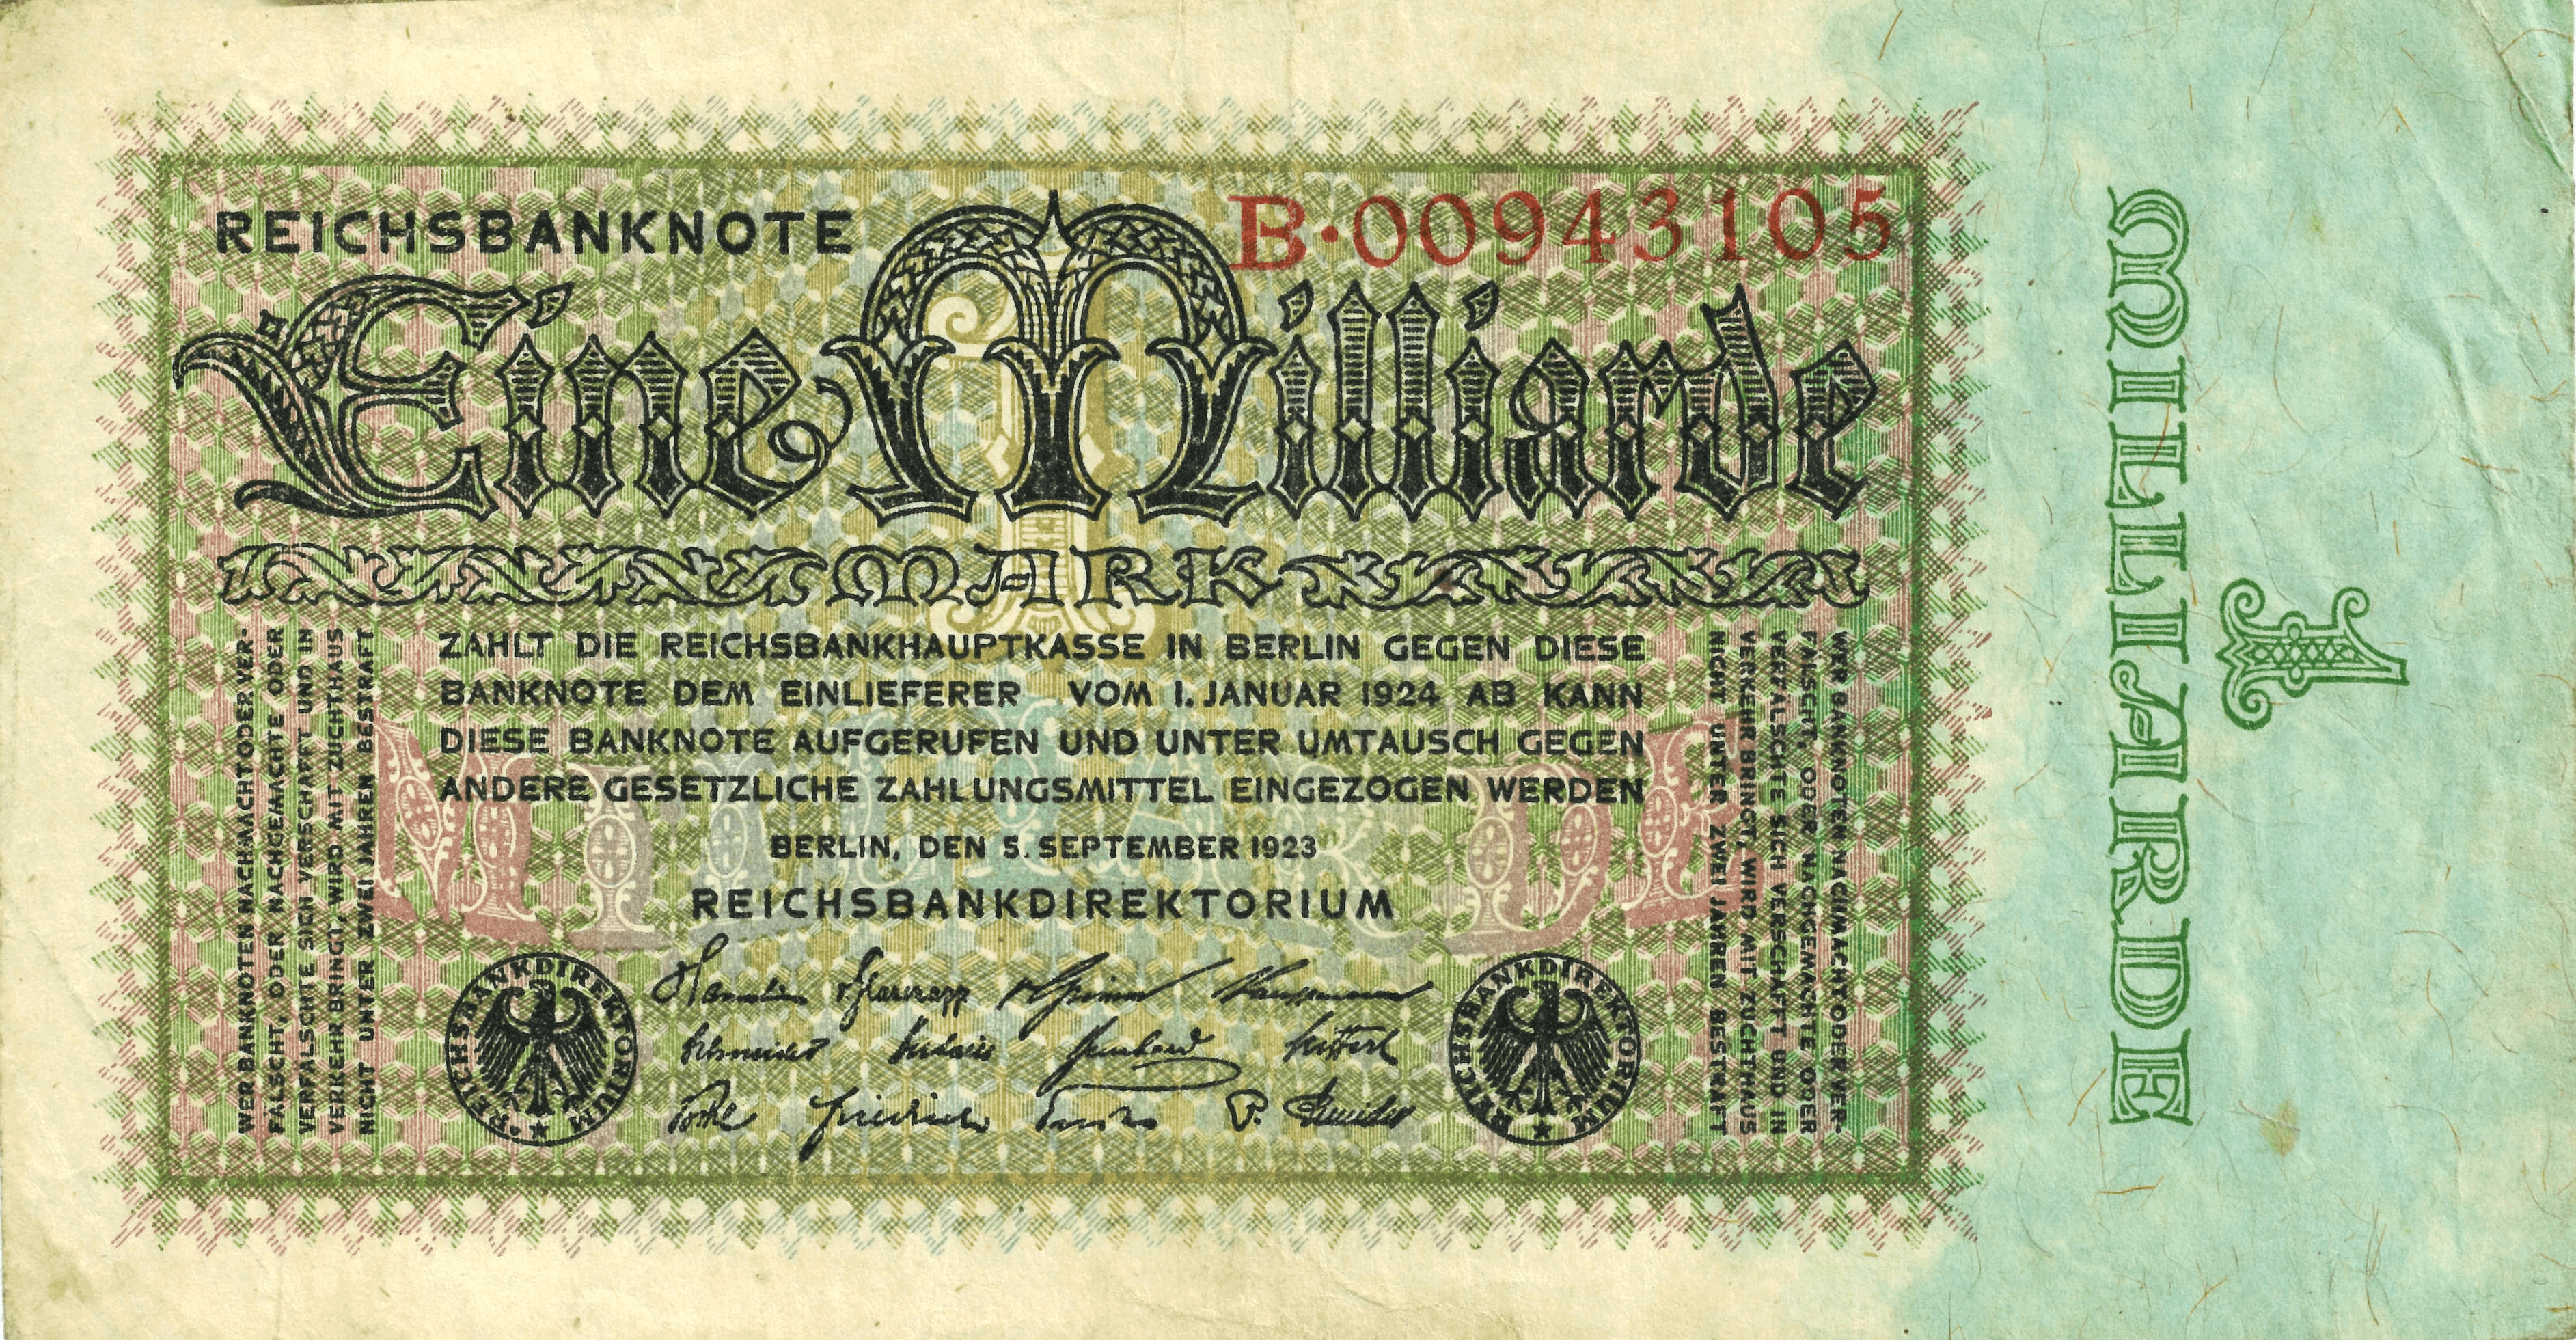 The Reichsbank 1.000.000.000 Mark Note